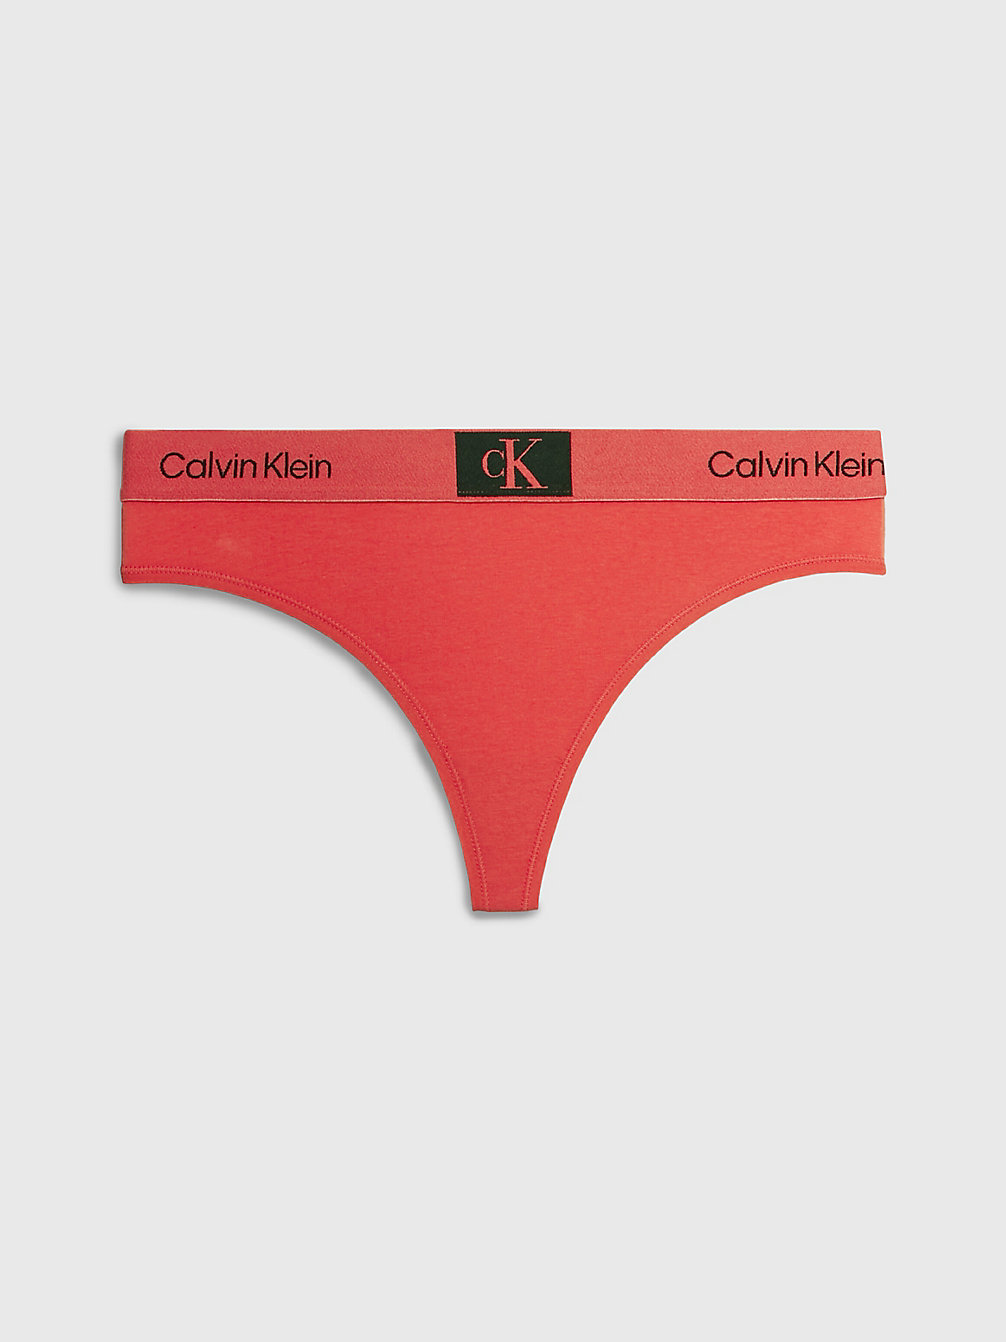 COOL MELON Thong - Ck96 undefined women Calvin Klein